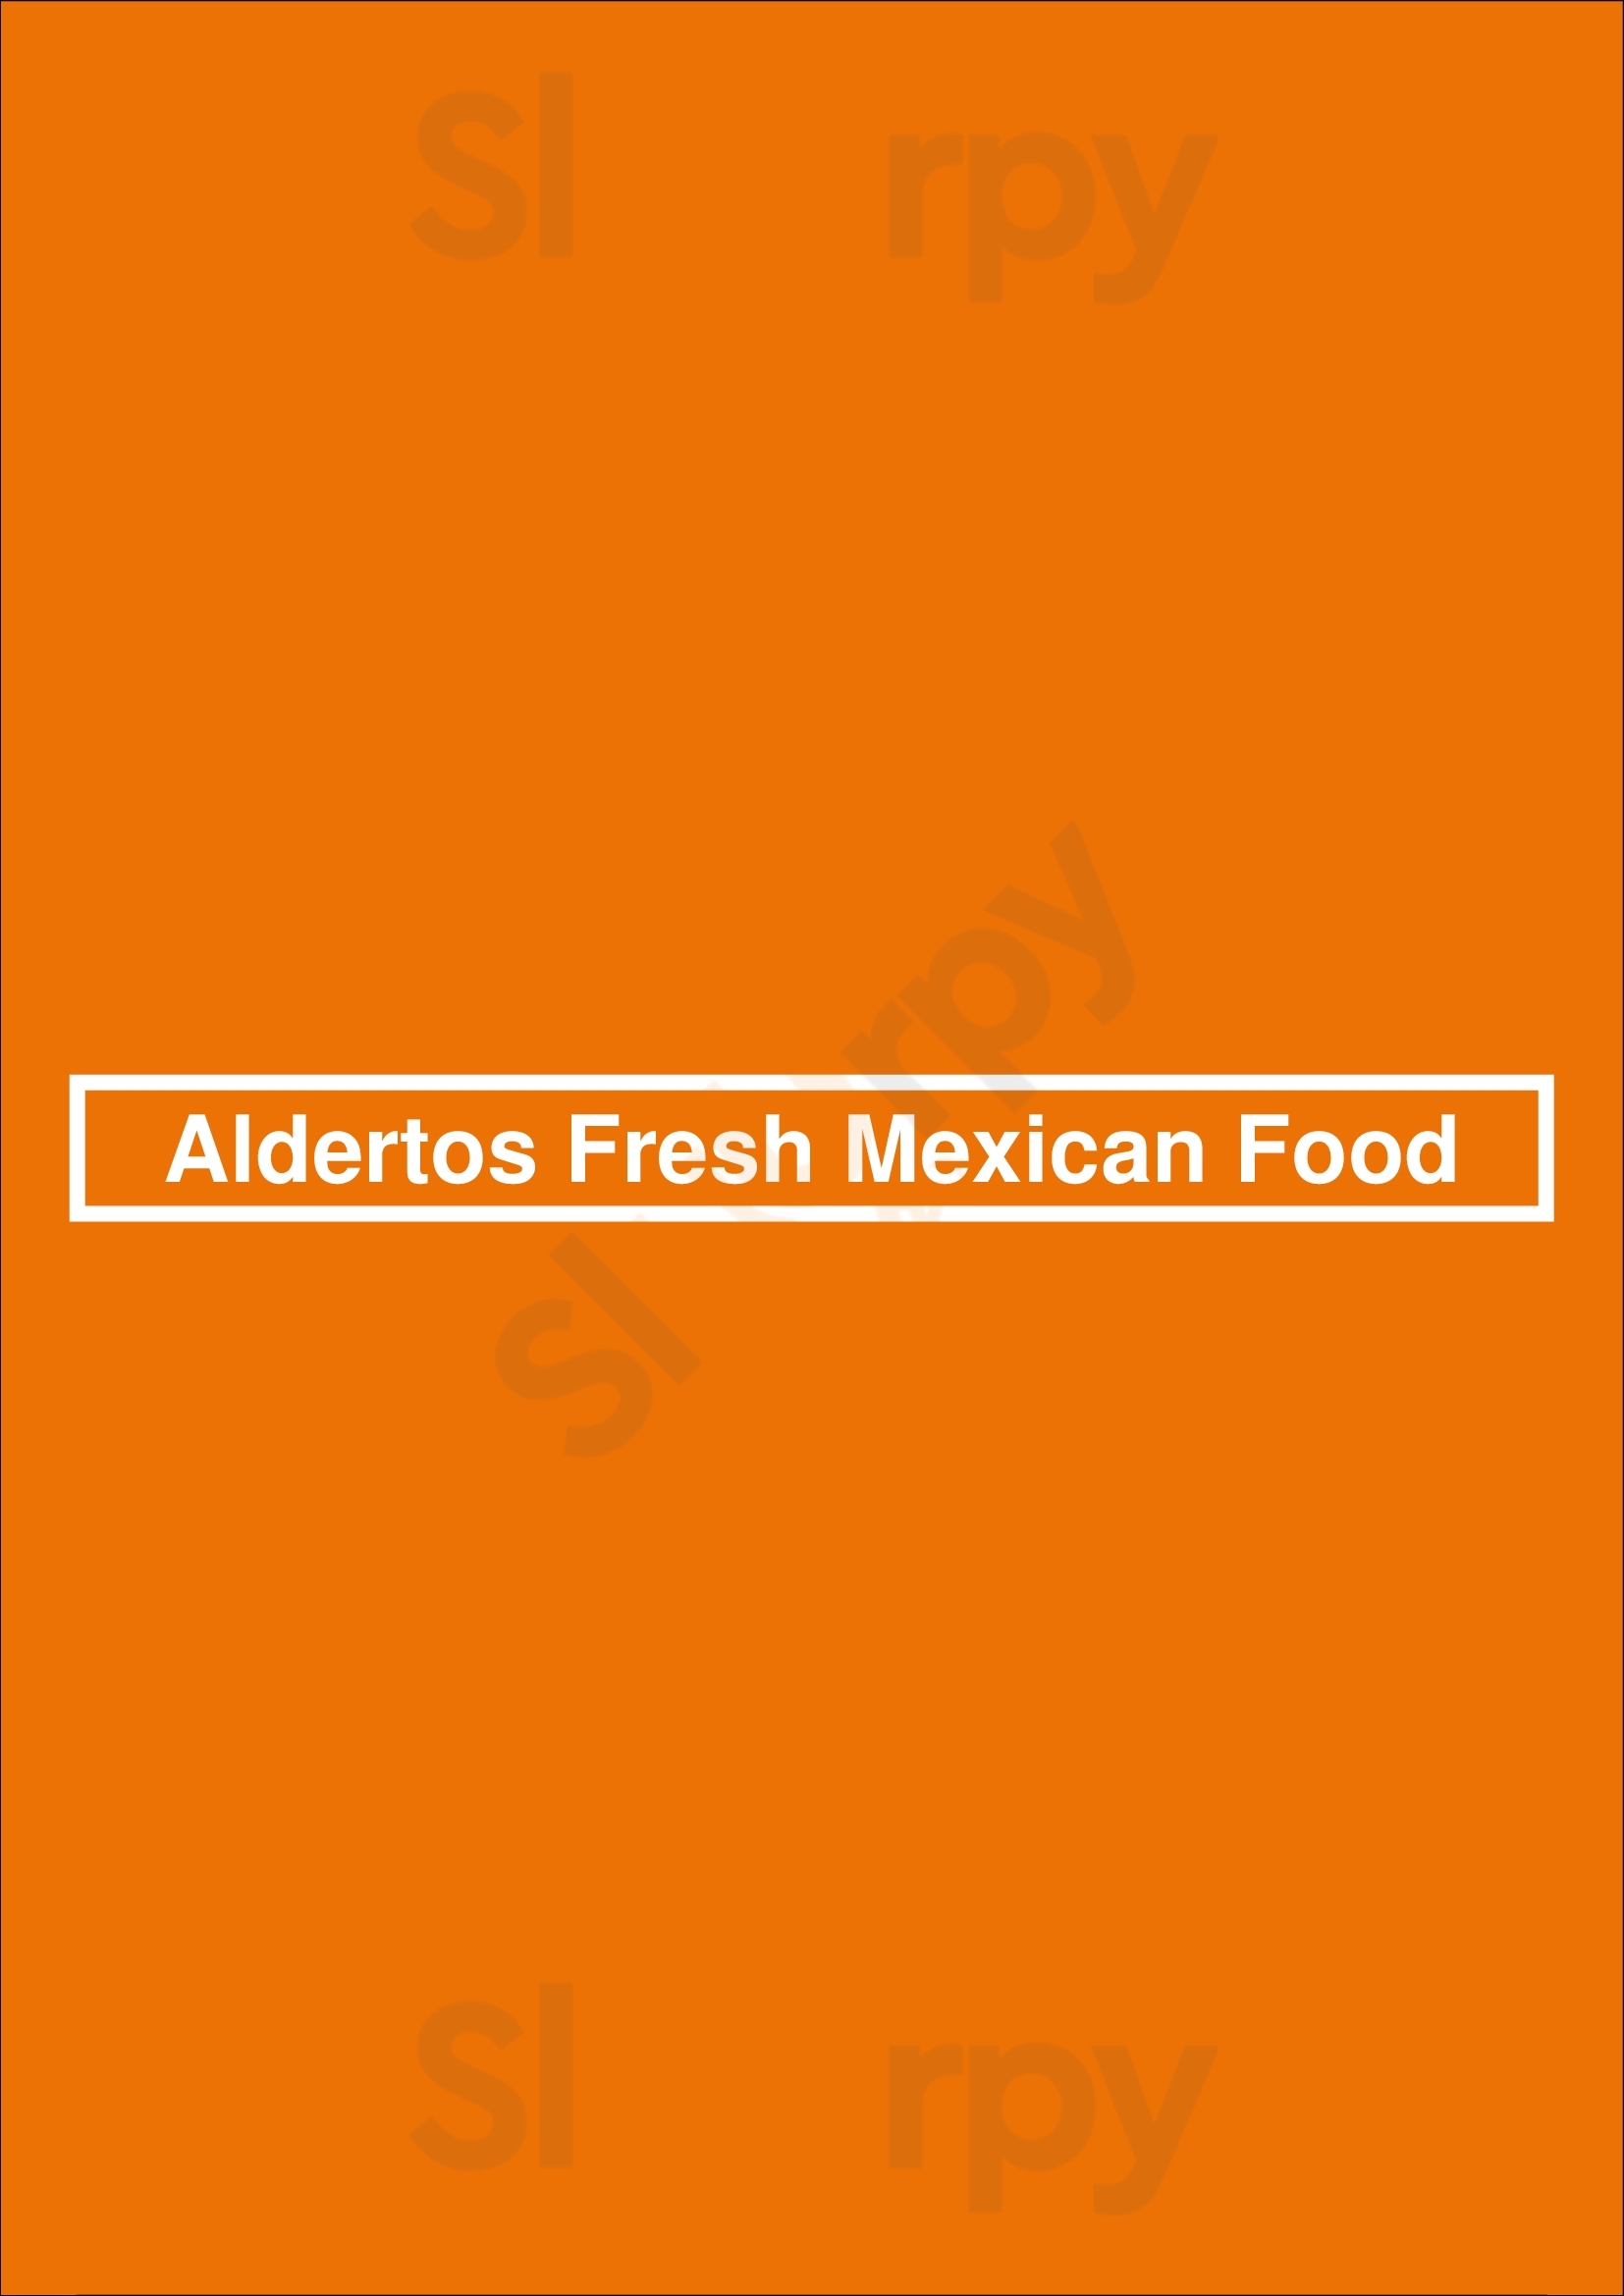 Aldertos Fresh Mexican Food Reno Menu - 1